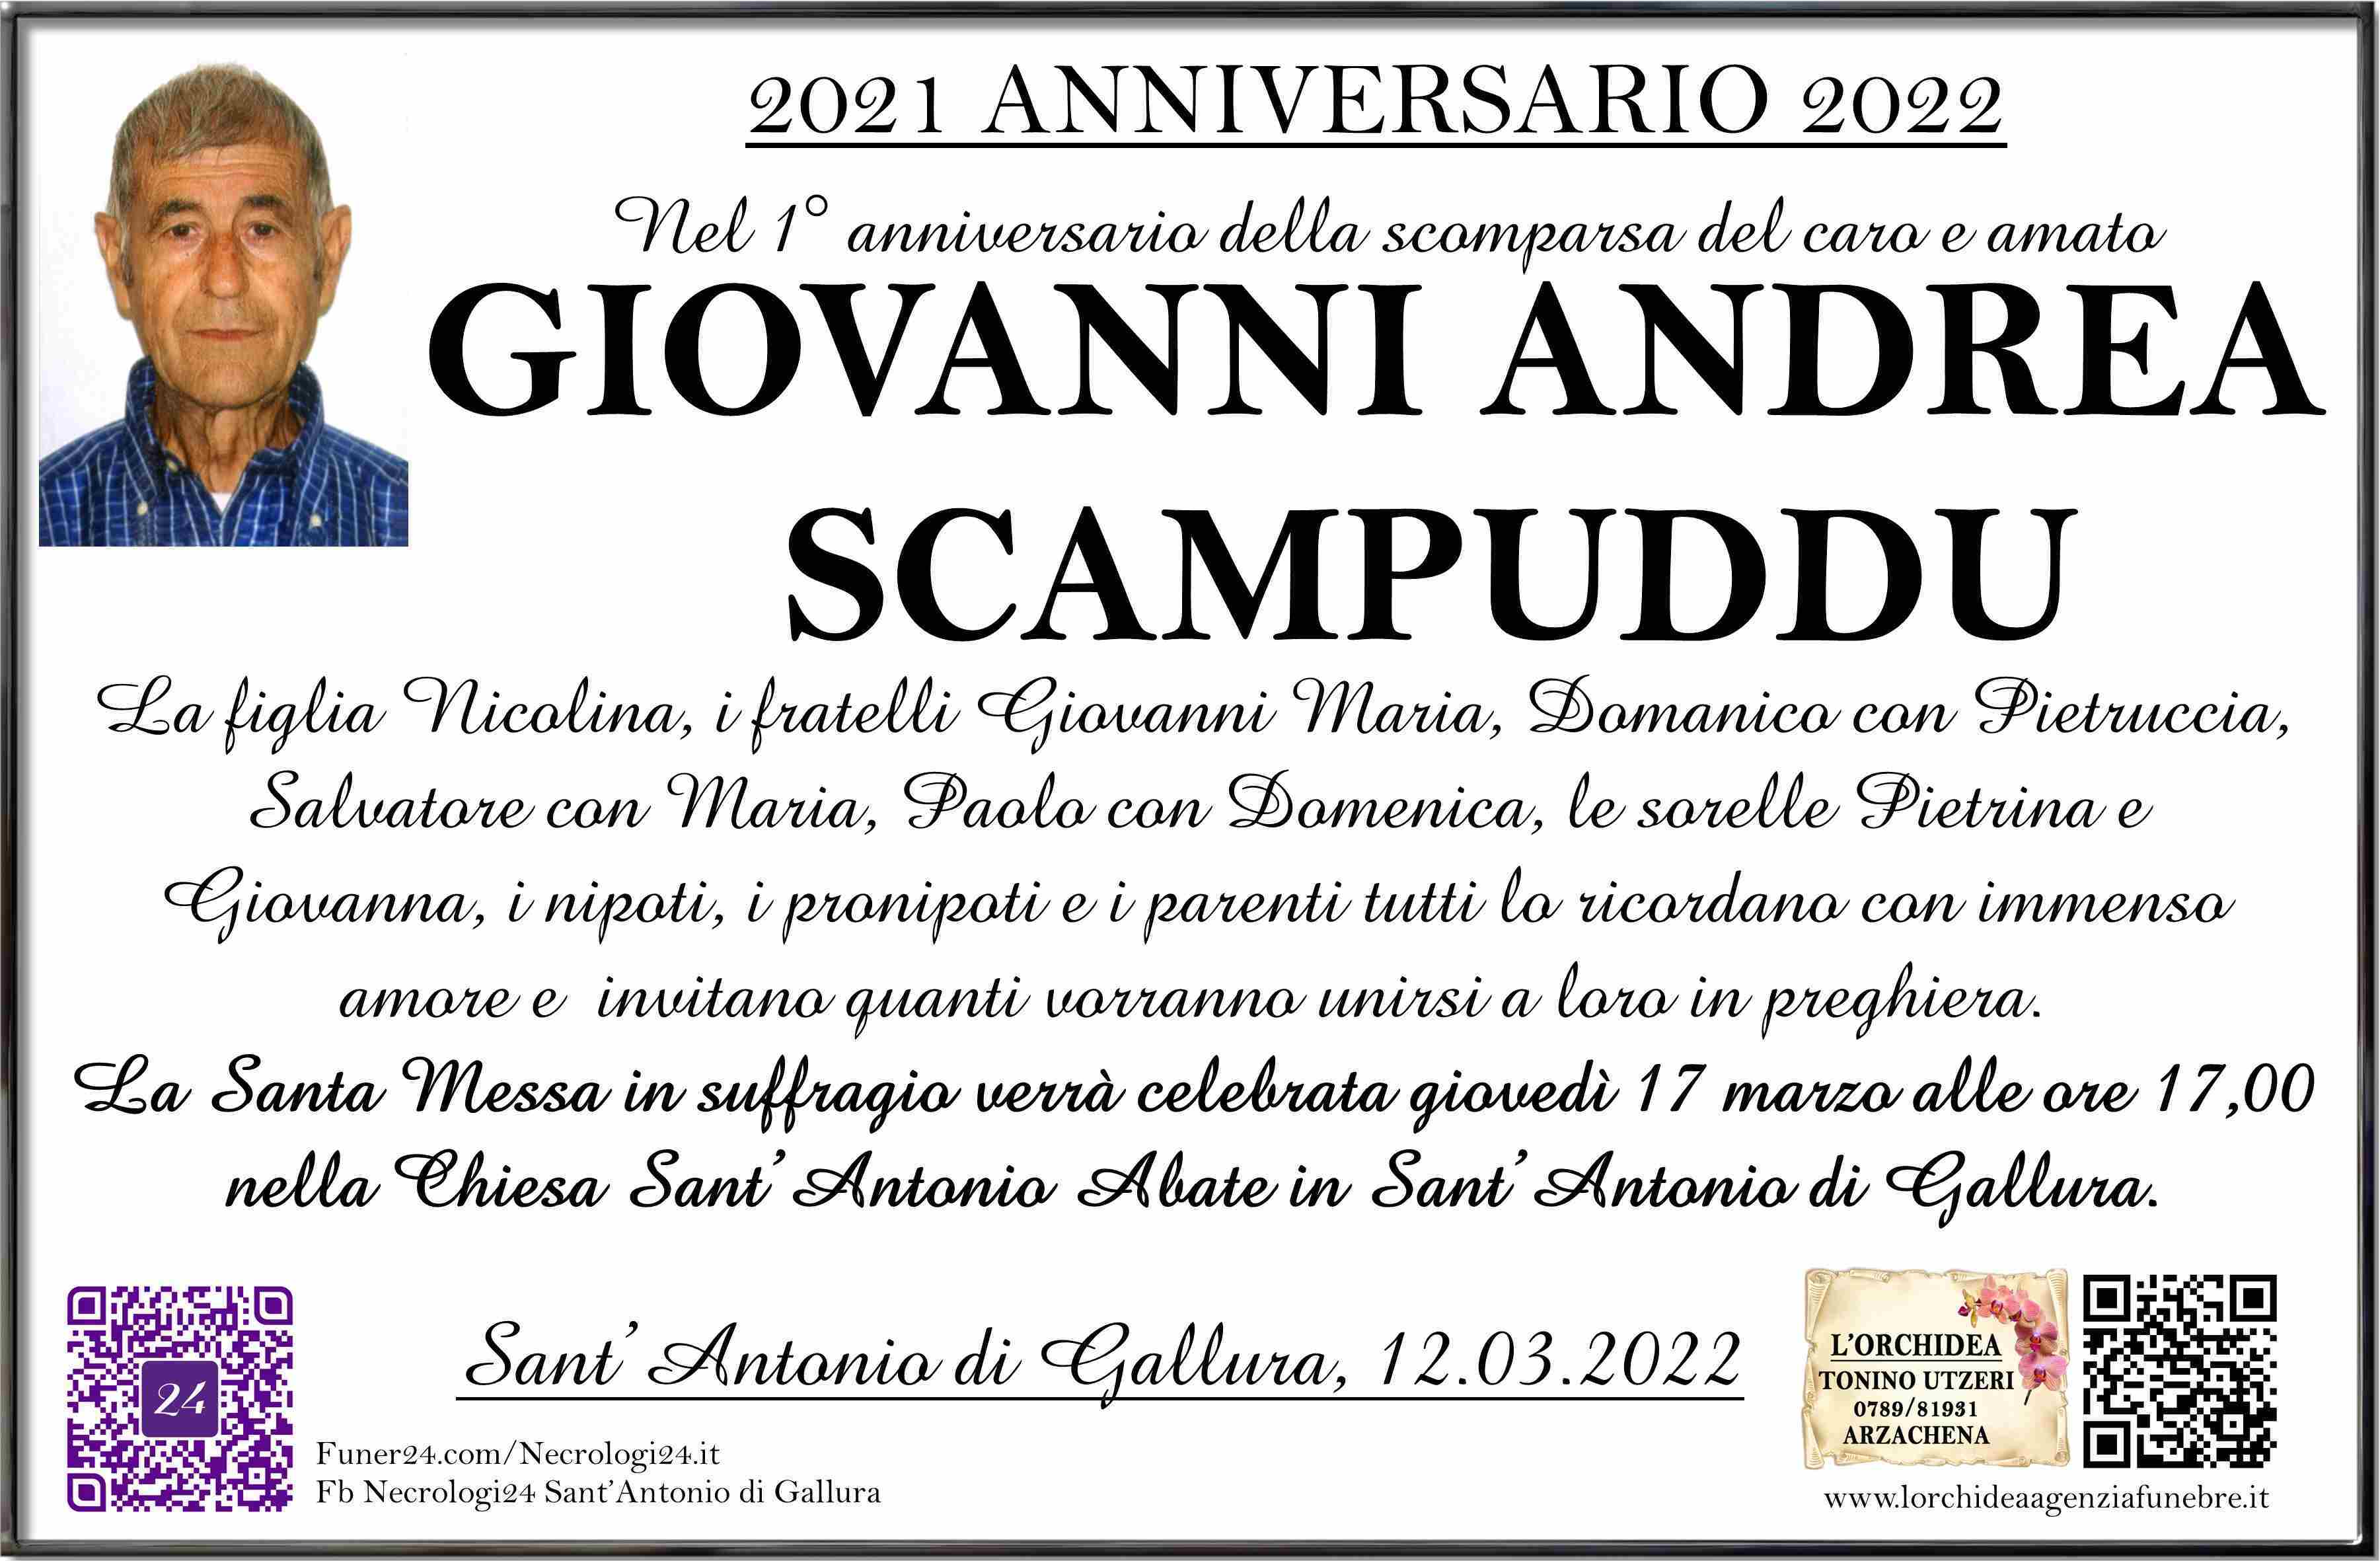 Giovanni Andrea Scampuddu